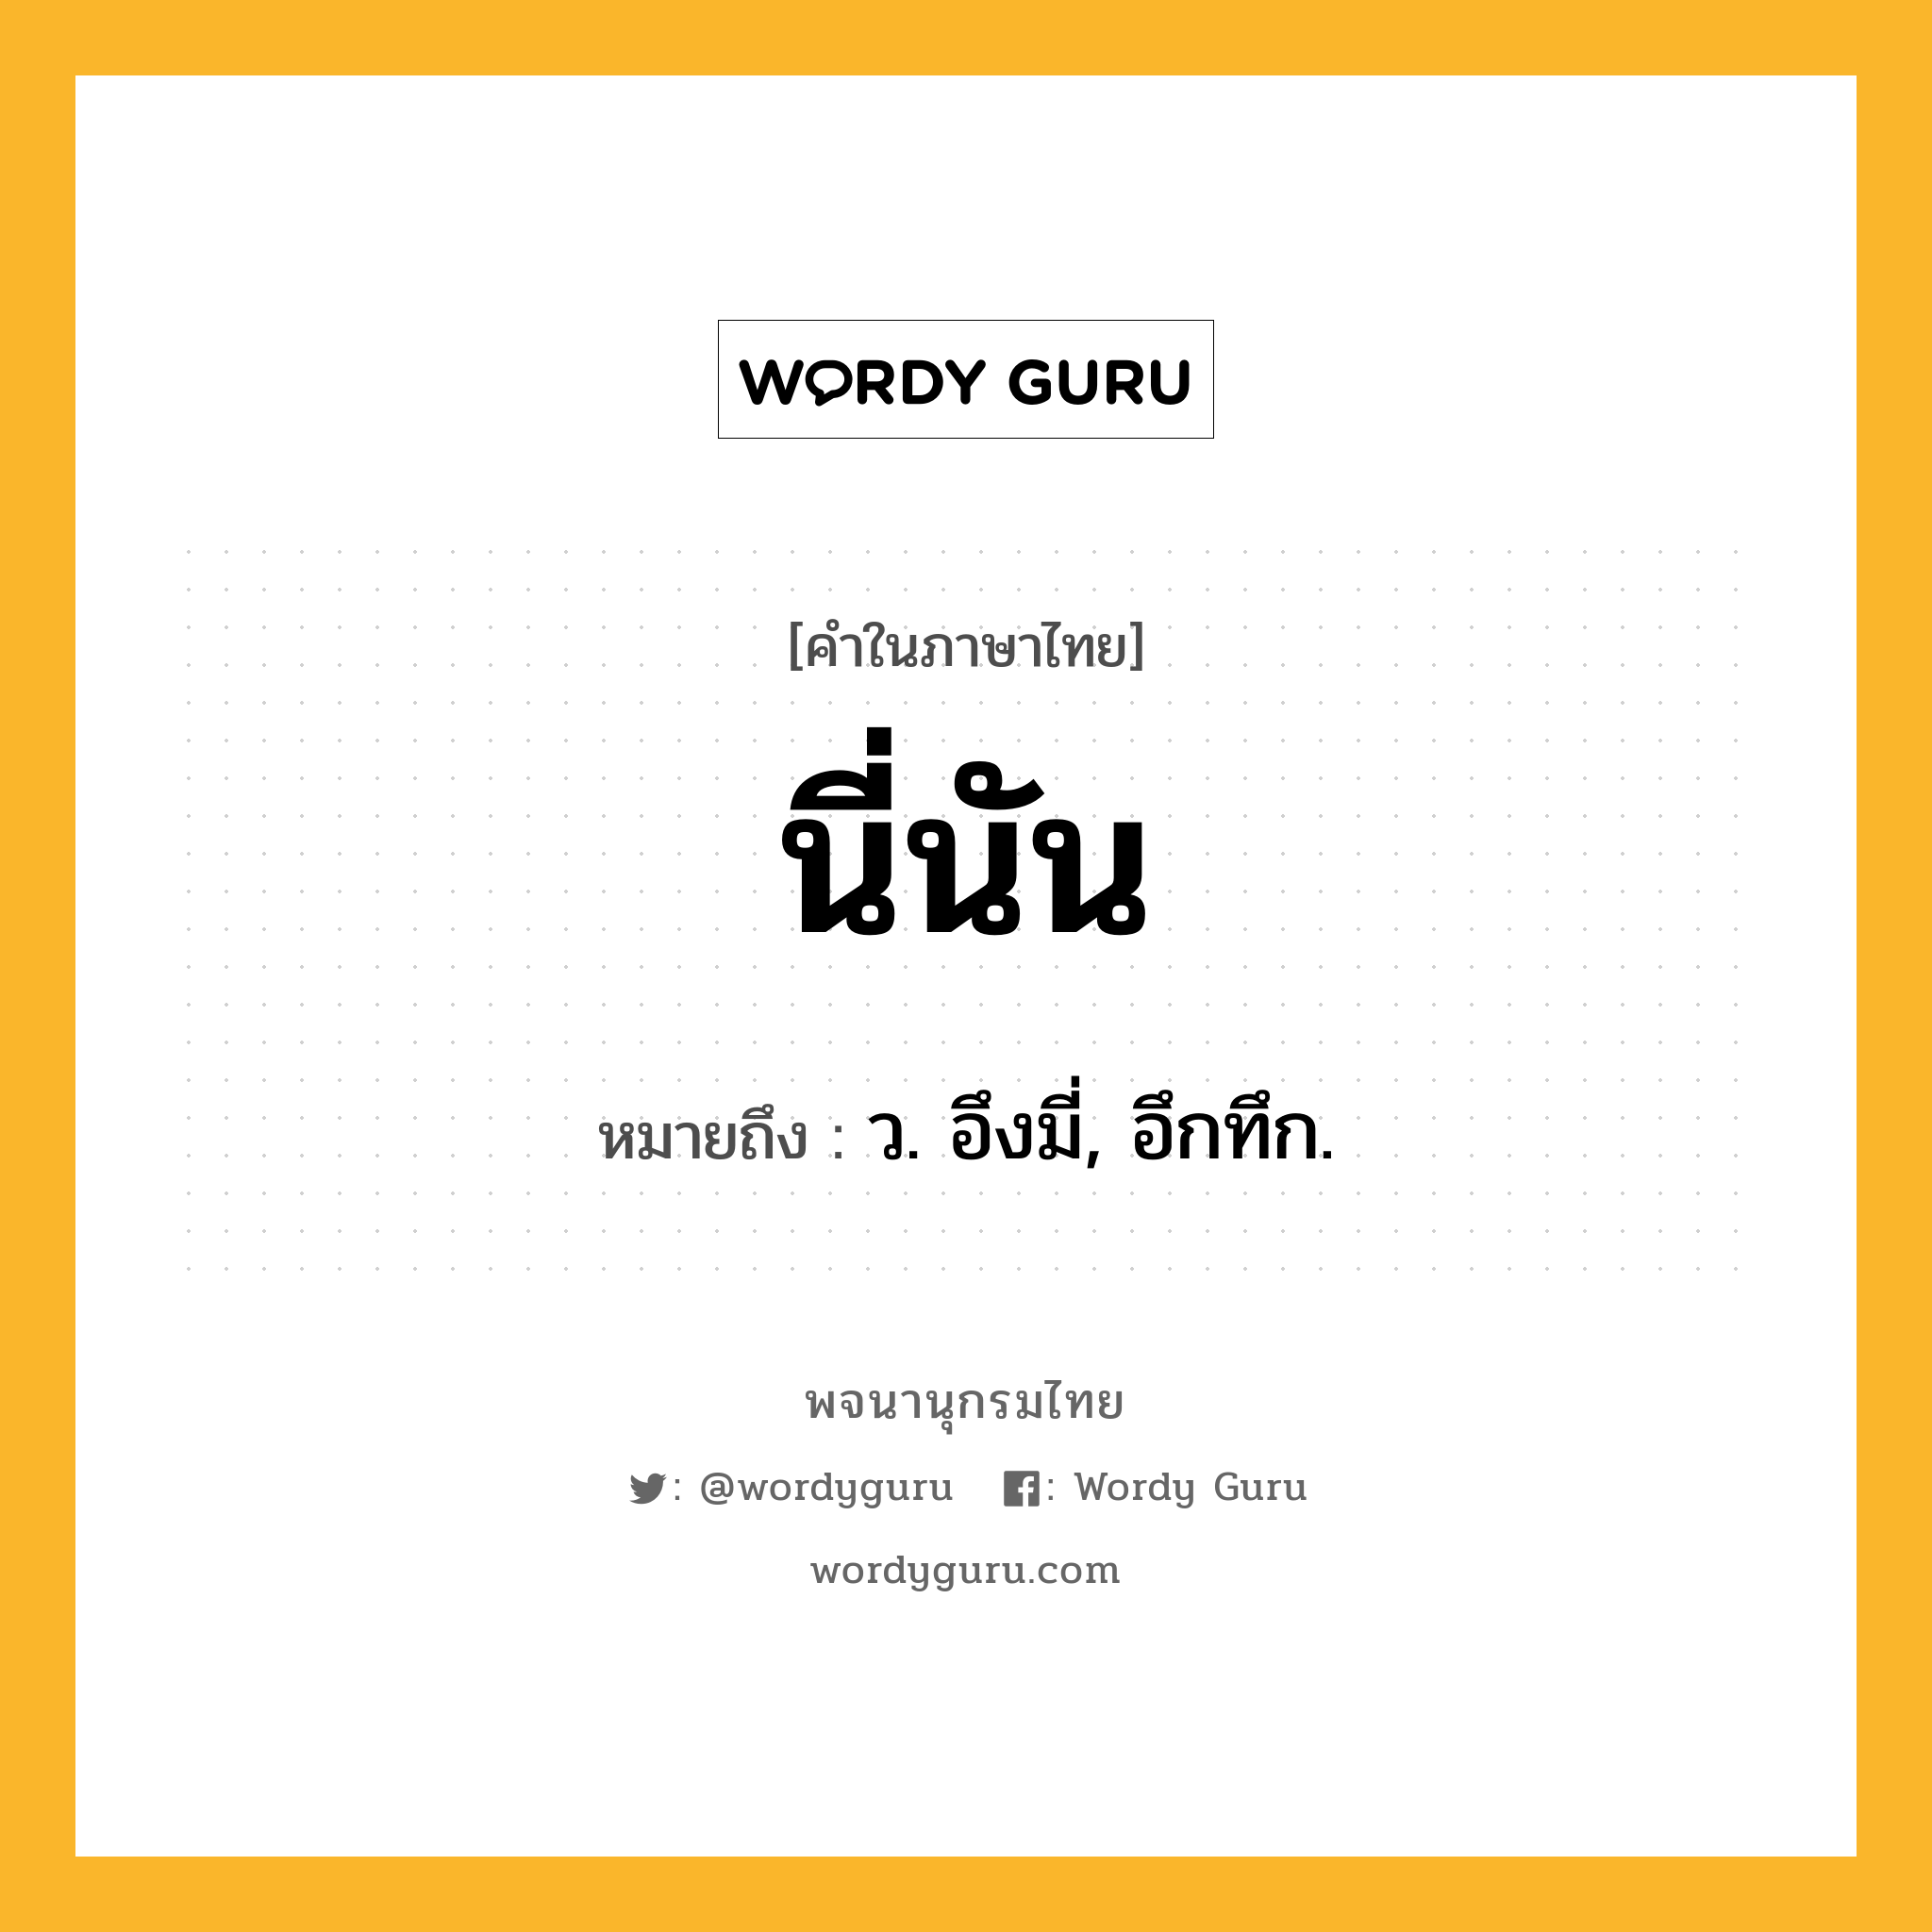 นี่นัน ความหมาย หมายถึงอะไร?, คำในภาษาไทย นี่นัน หมายถึง ว. อึงมี่, อึกทึก.